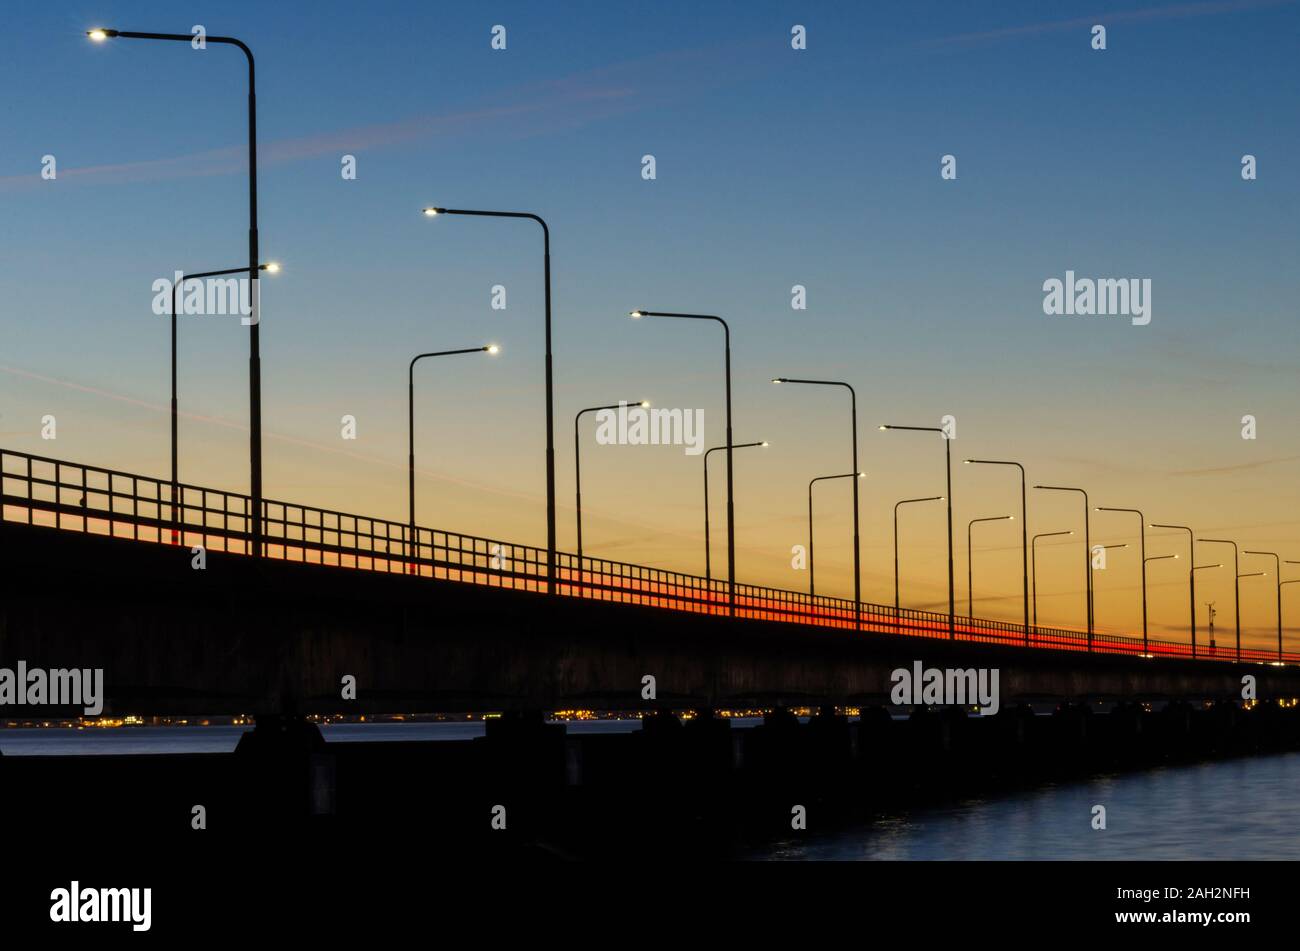 Farben durch die Oland Brücke in Schweden. Die Brücke verbindet die Insel mit dem Festland Oland Schweden Stockfoto